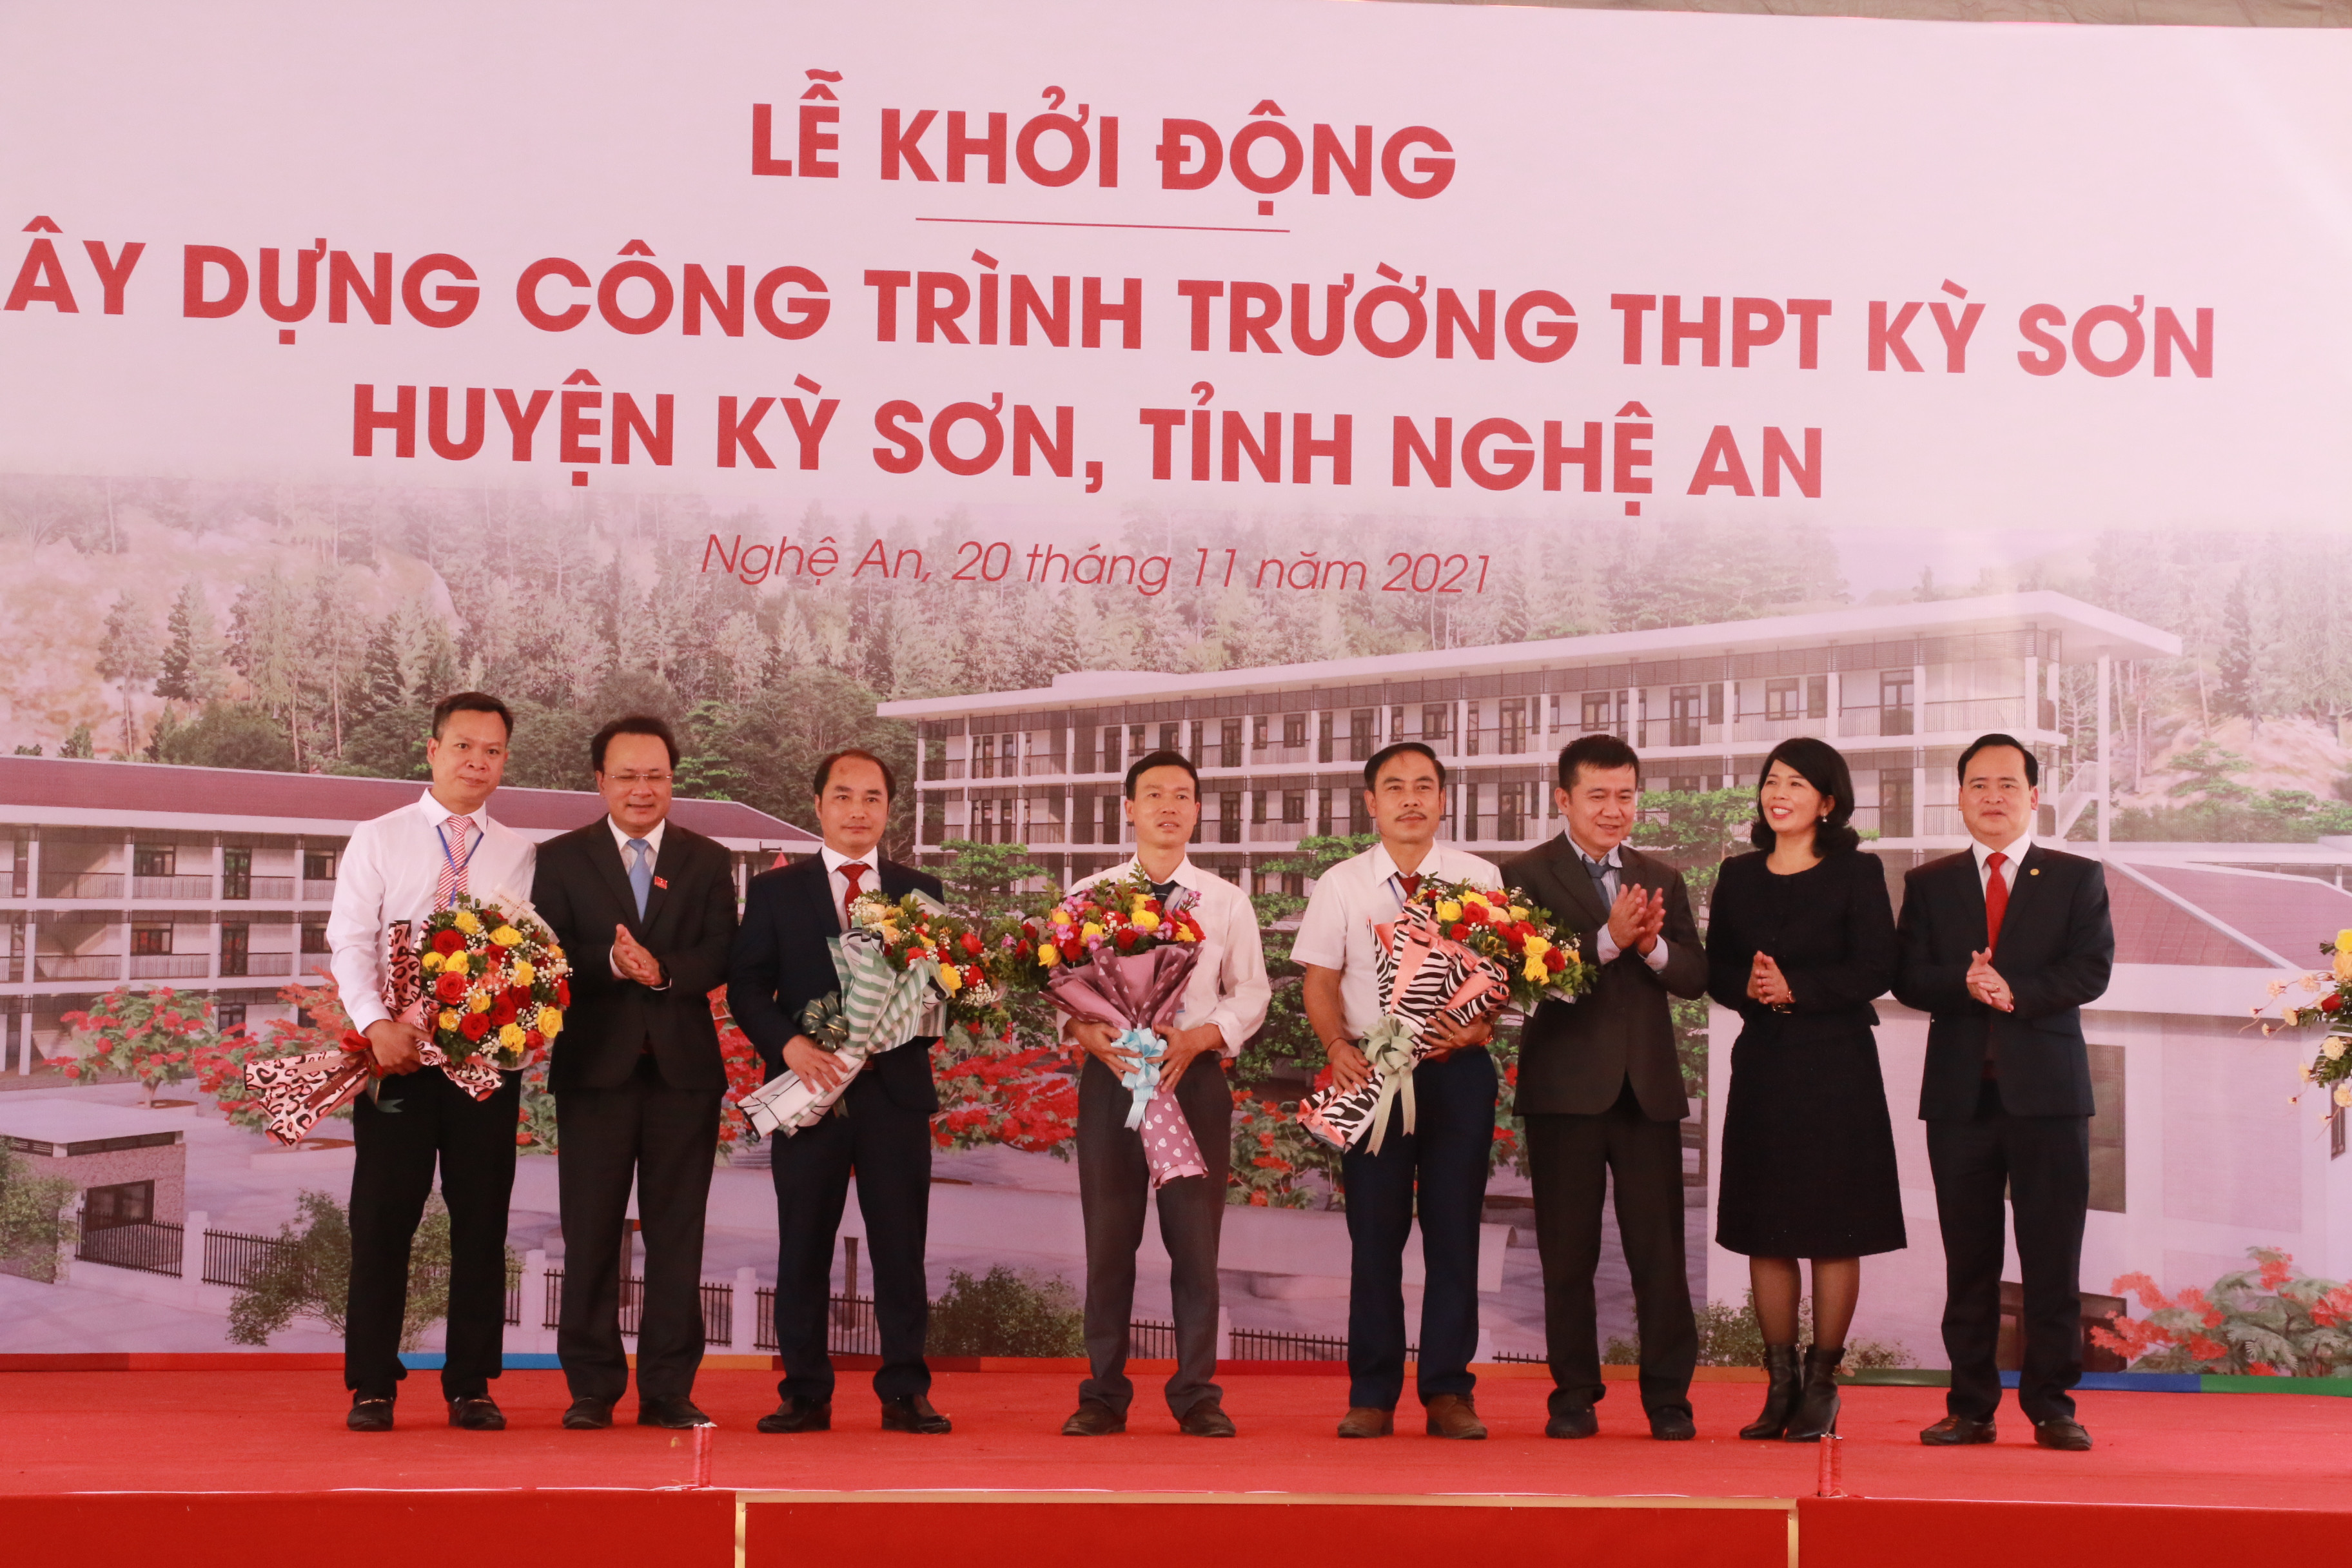 Đồng chí Nguyễn Nam Đình tặng hoa cho các đơn vị tài trợ và các giáo viên Trường THPT Kỳ Sơn. Ảnh: MH